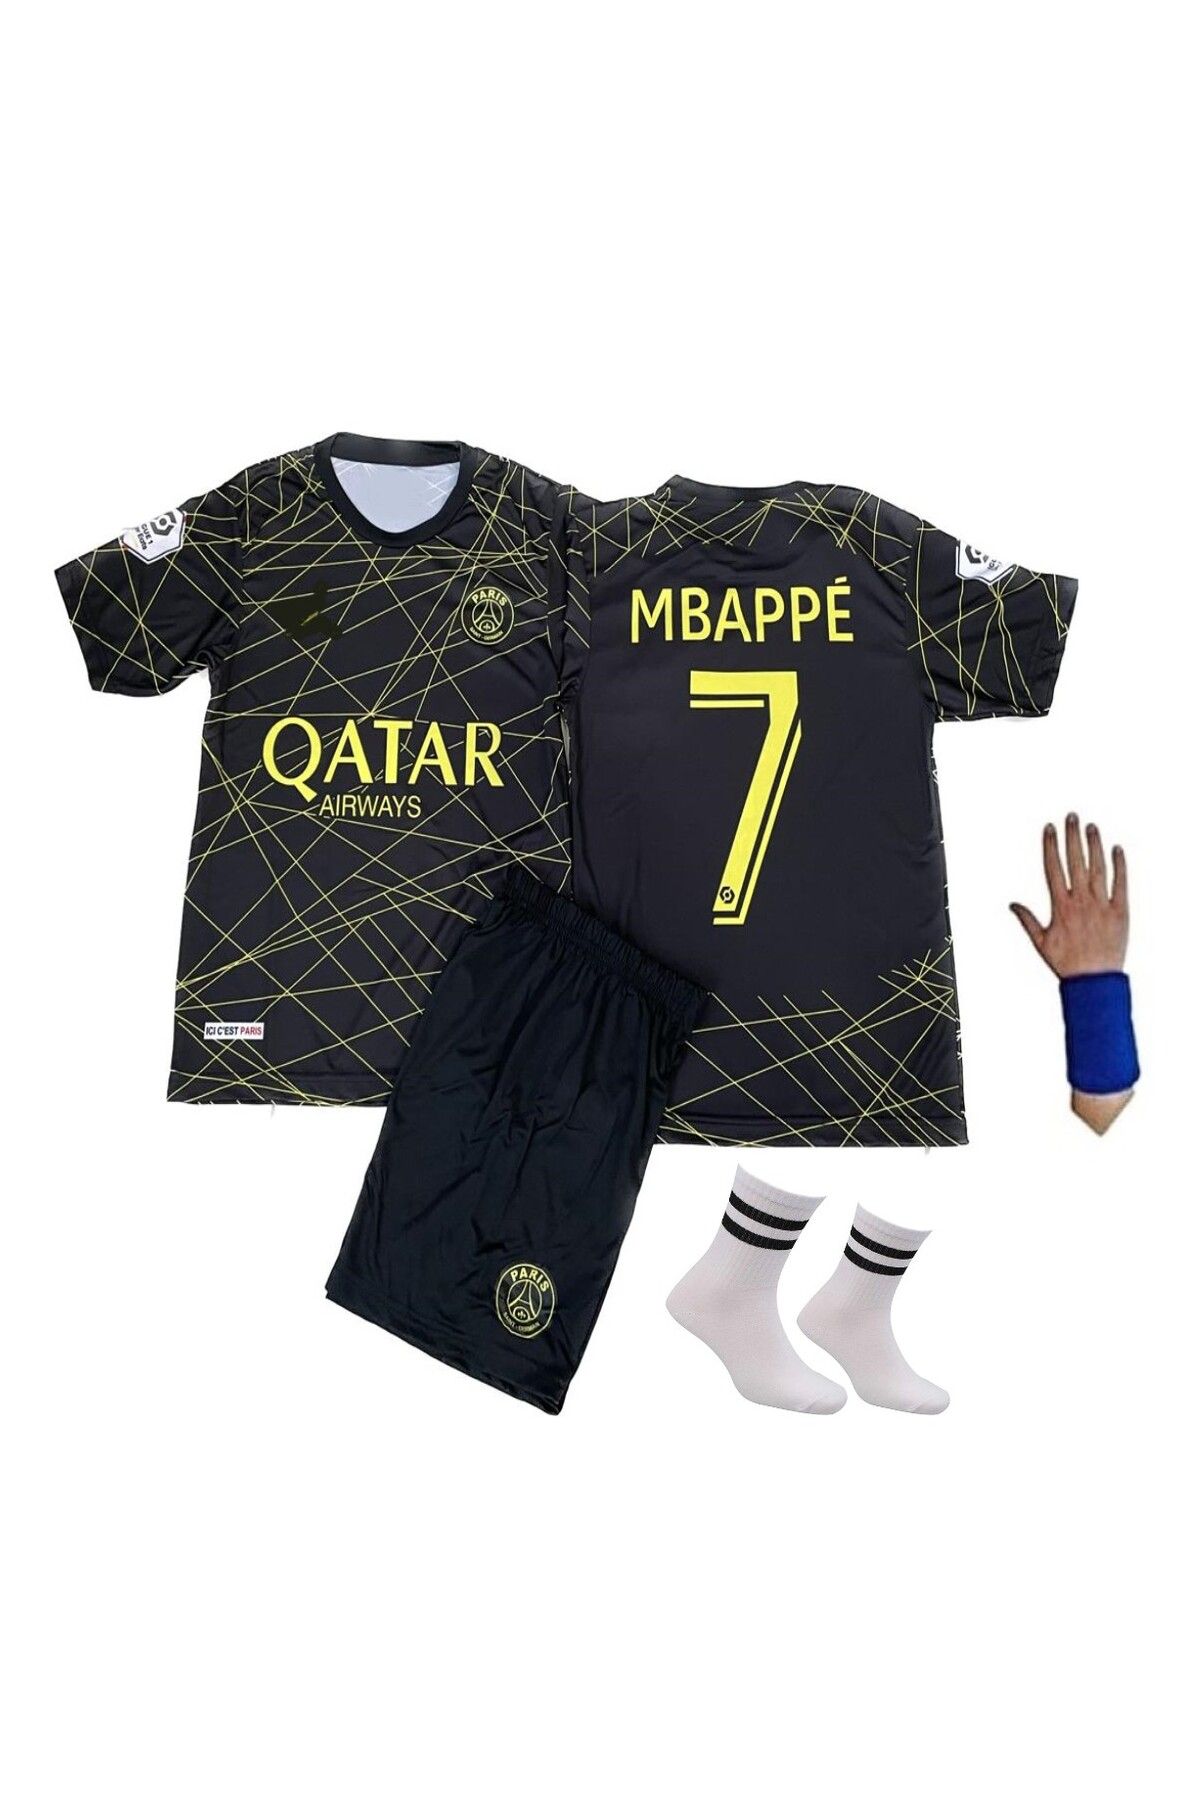 gökmenspor Paris Saint-germain Mbappe Siyah Gold Özel Tasarım Çocuk Futbol Forması 4'lü Set Bileklik Hediyeli